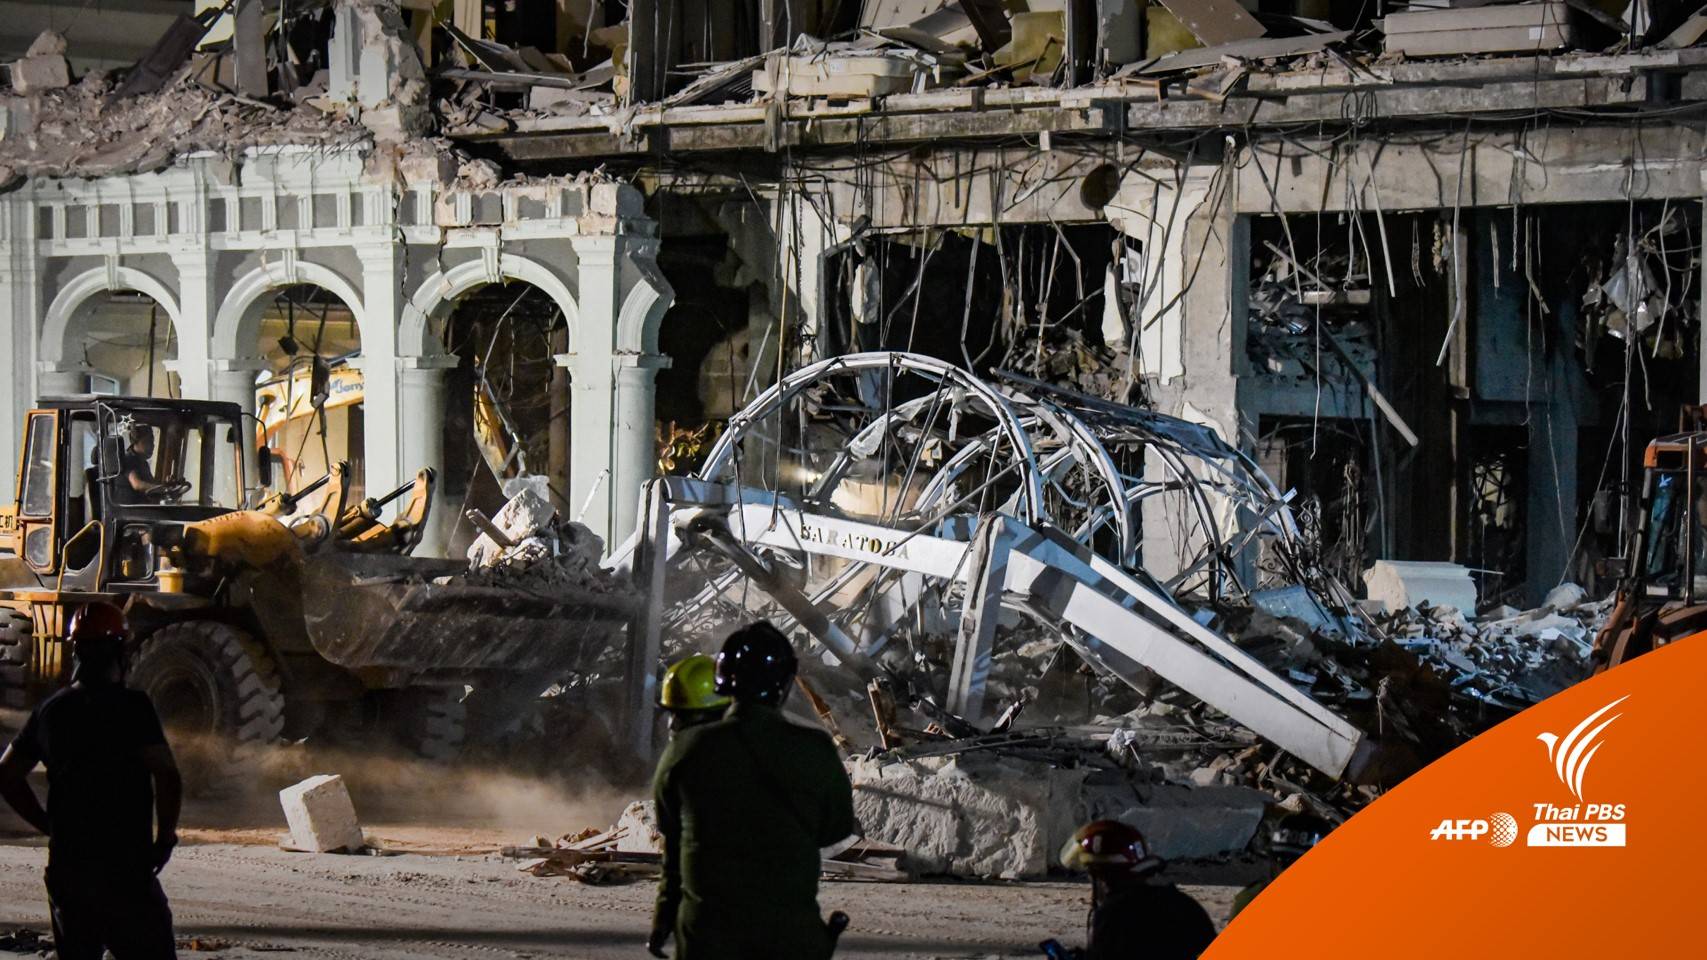 โรงแรมดัง "คิวบา" ระเบิดตาย 22 เจ็บ 70 คนคาดแก๊สรั่ว 